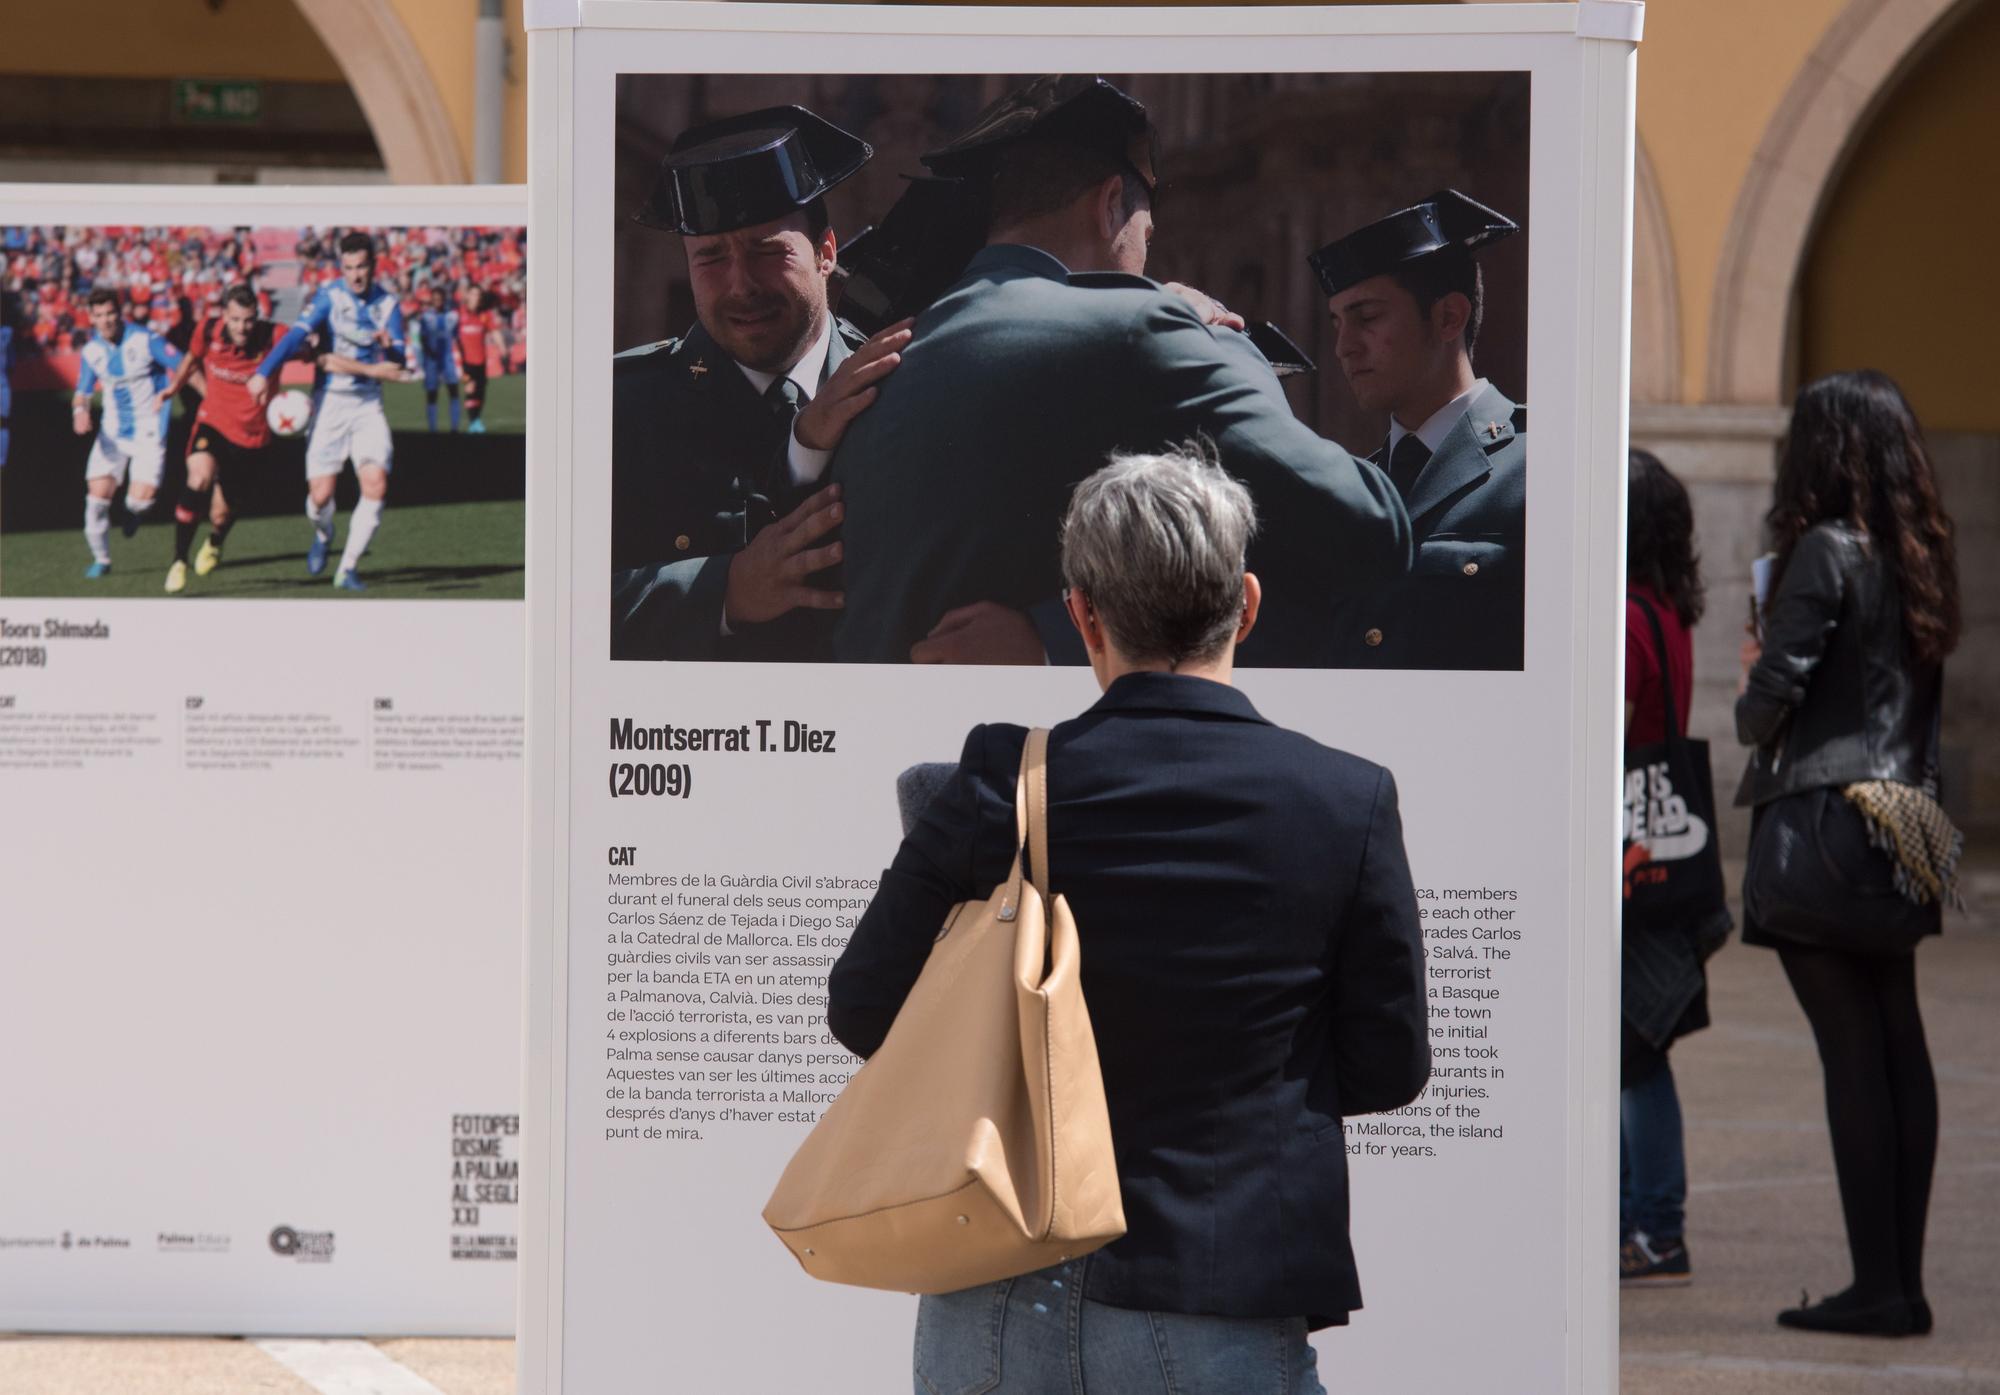 La exposición Fotoperiodismo en Palma en el siglo XXI se exhibie en la plaza de l'Olivar